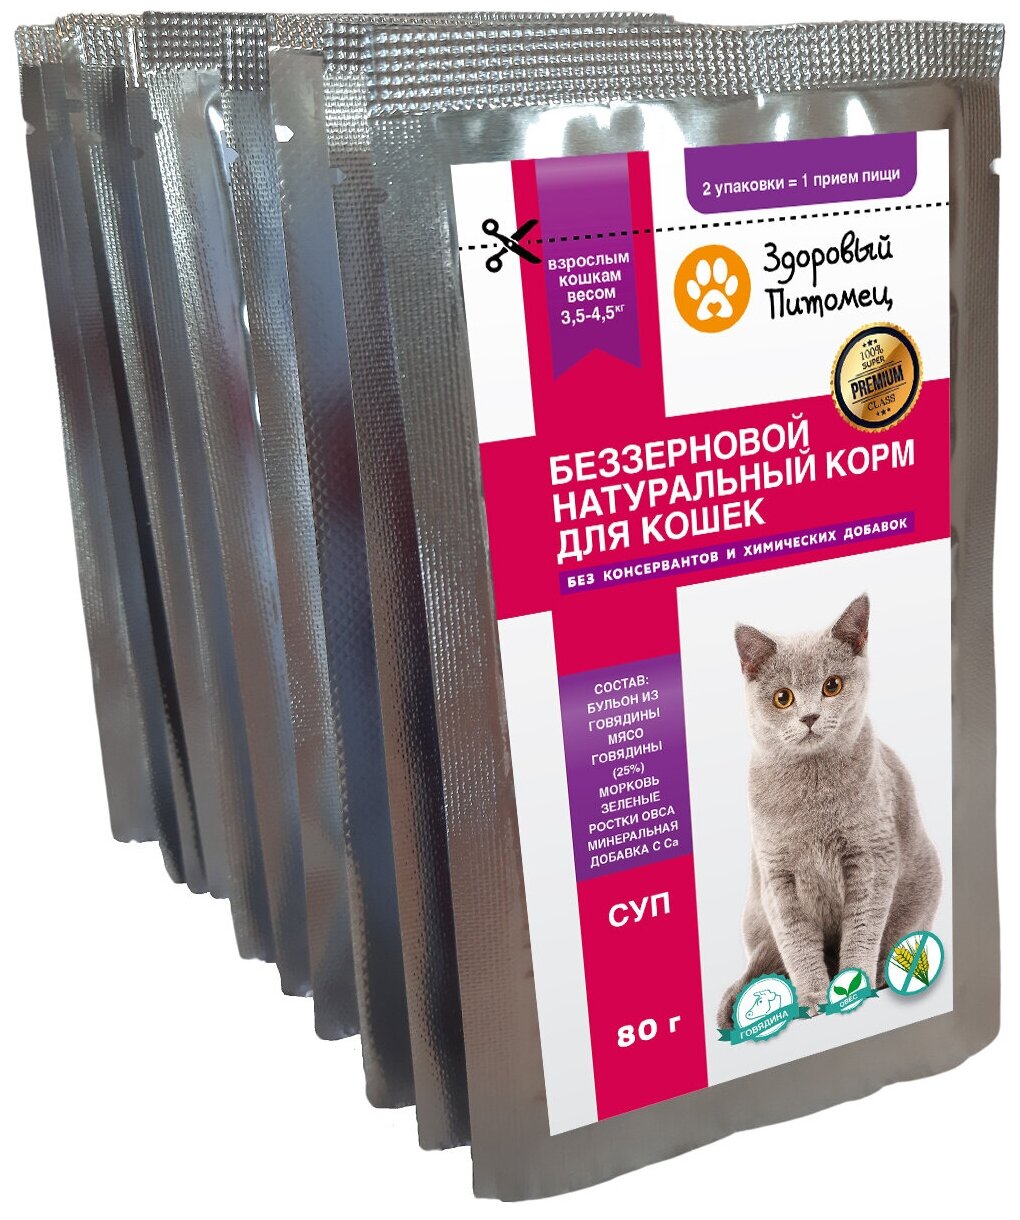 Влажный беззерновой натуральный корм (СУП) для кошек Здоровый Питомец 10шт по 80г с говядиной и овощами